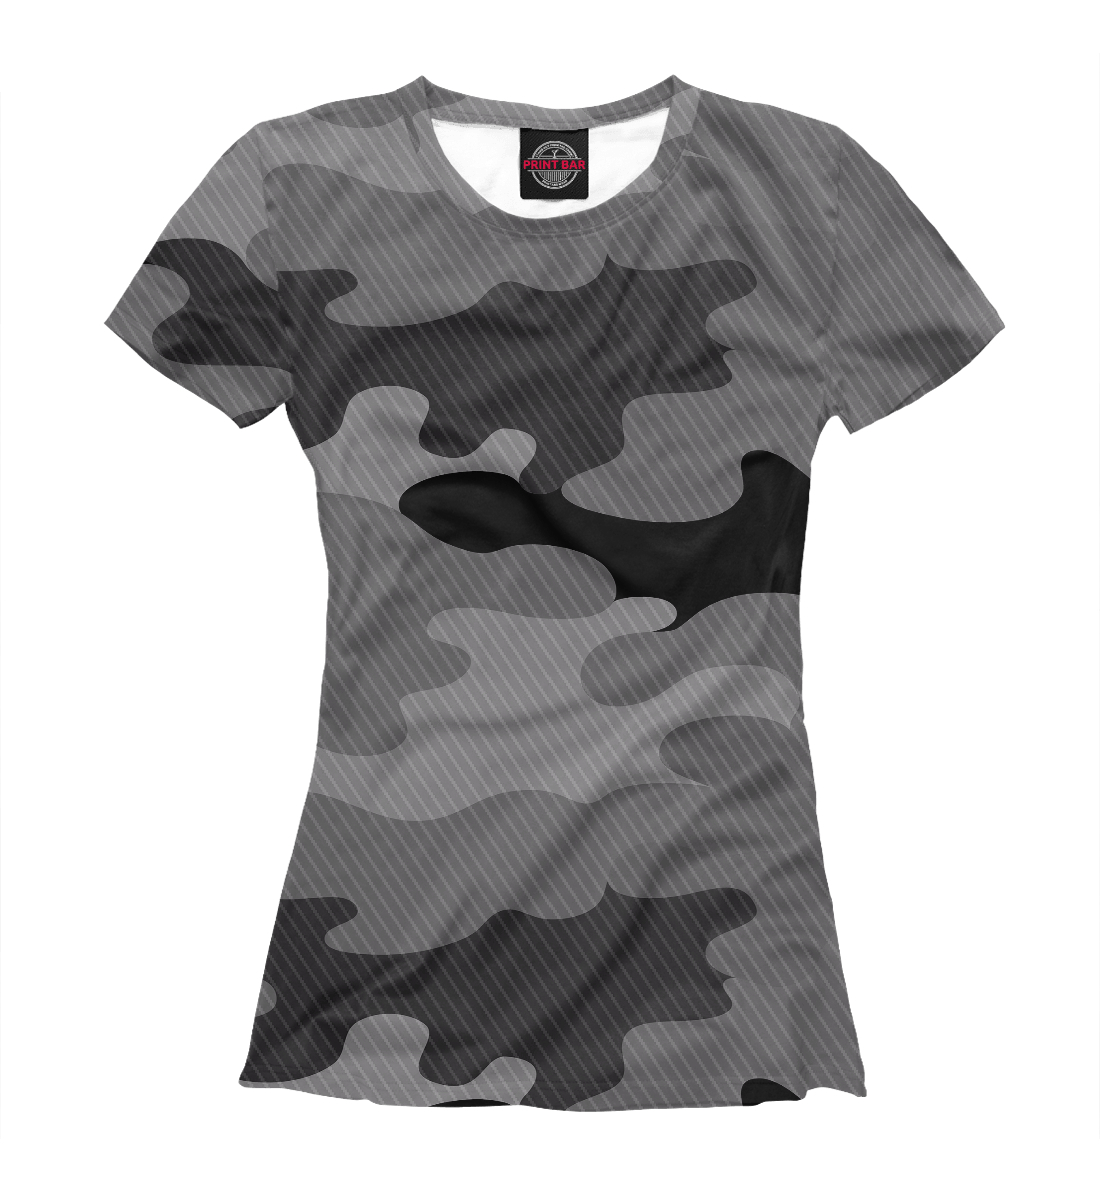 Детская Футболка camouflage gray для девочек, артикул APD-131416-fut-1mp